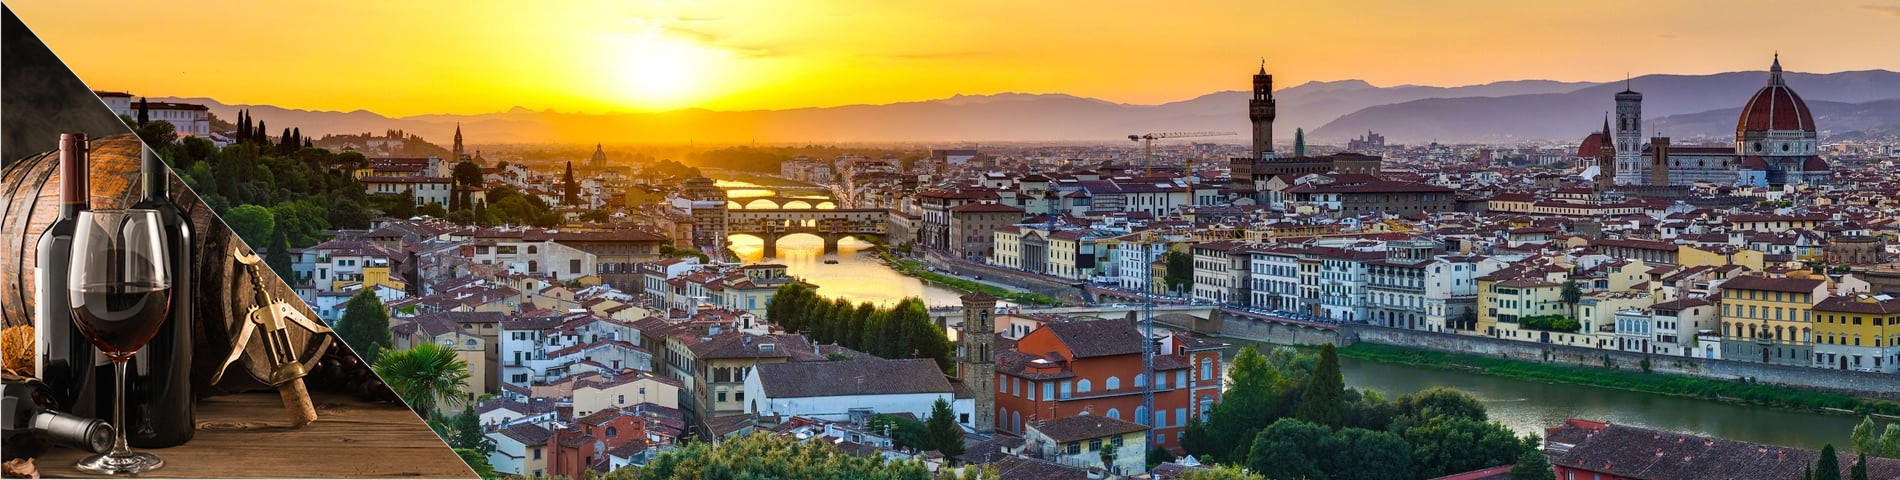 Firenze - Olasz & borászat